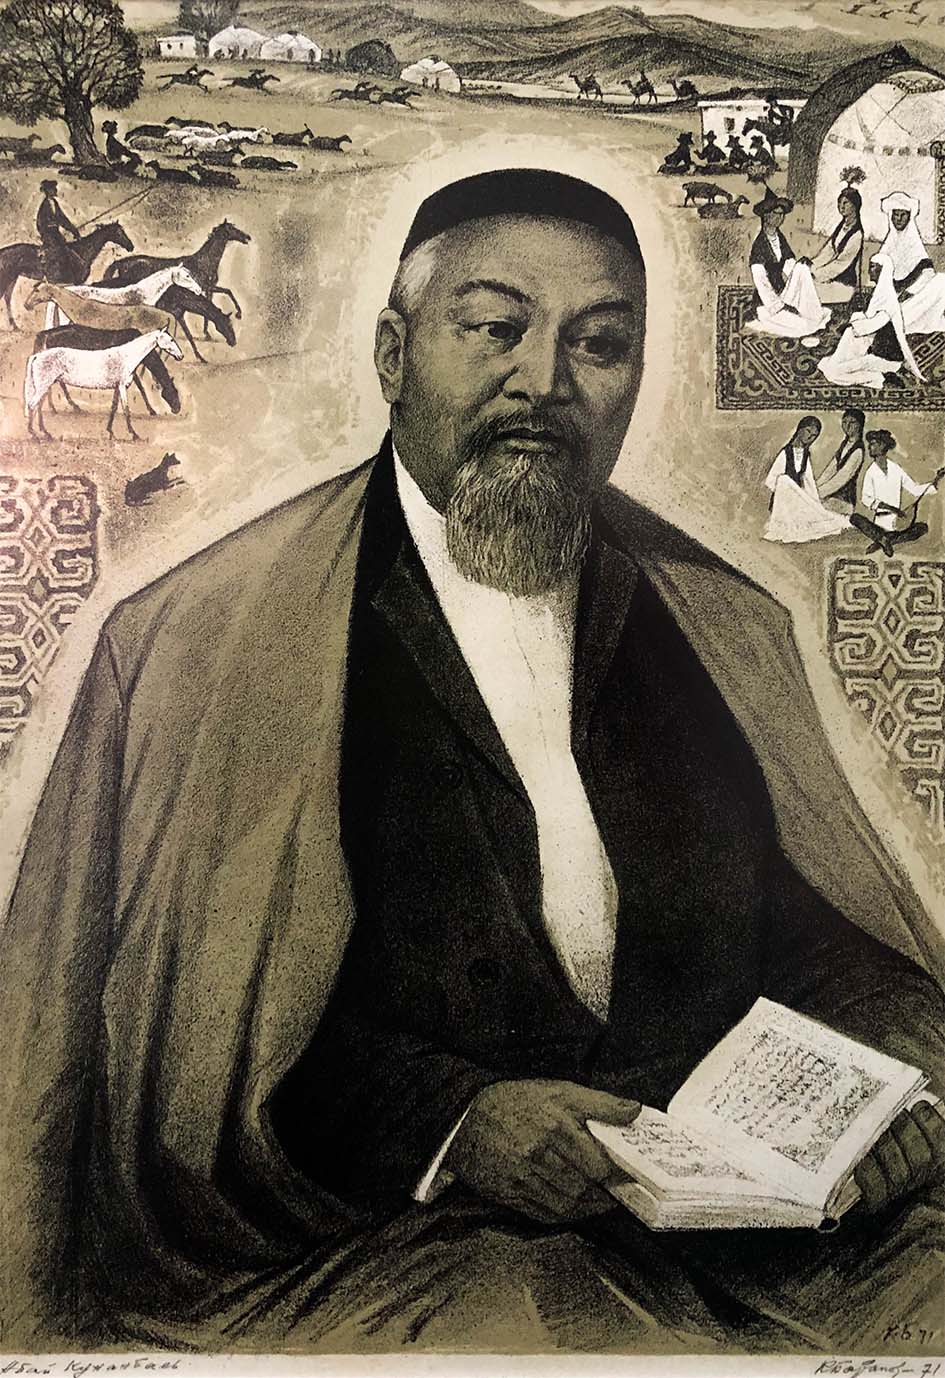 Сегодня в Казахстане отмечают День Абая – 10 августа исполняется 175 лет со дня рождения мыслителя, поэта и реформатора